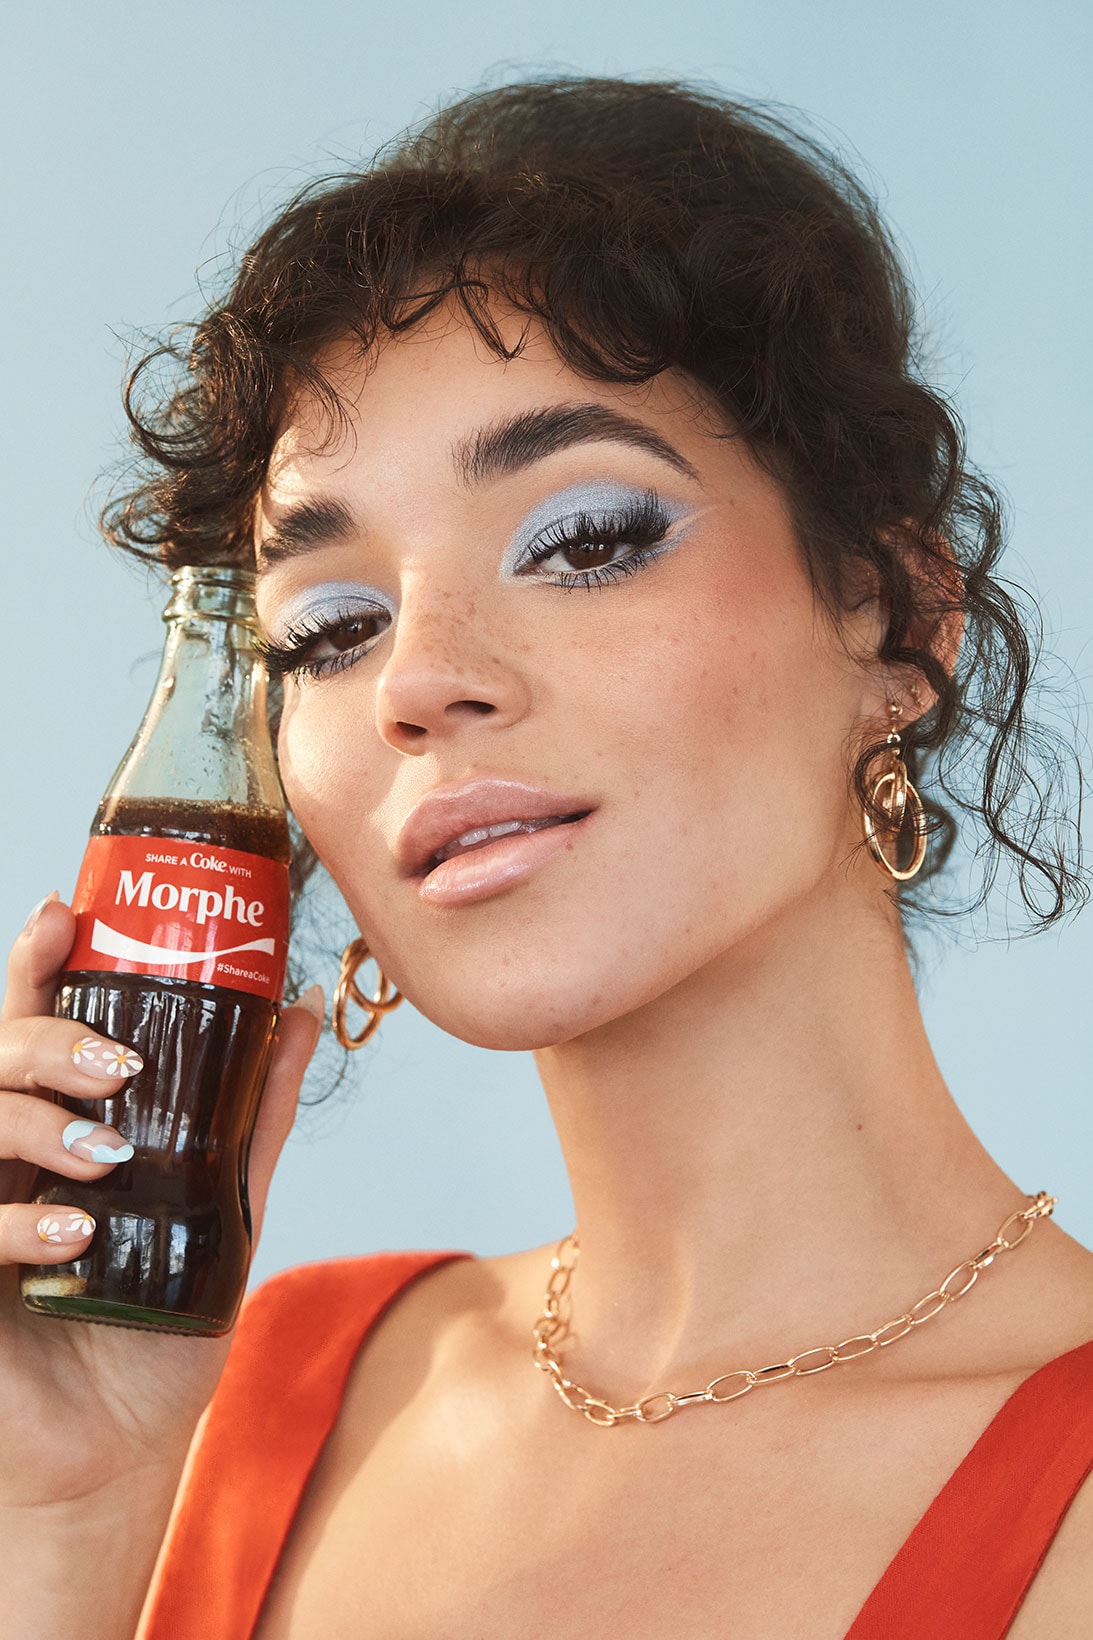 makeup eyeshadow face coca cola morphe collaboration coke bottle